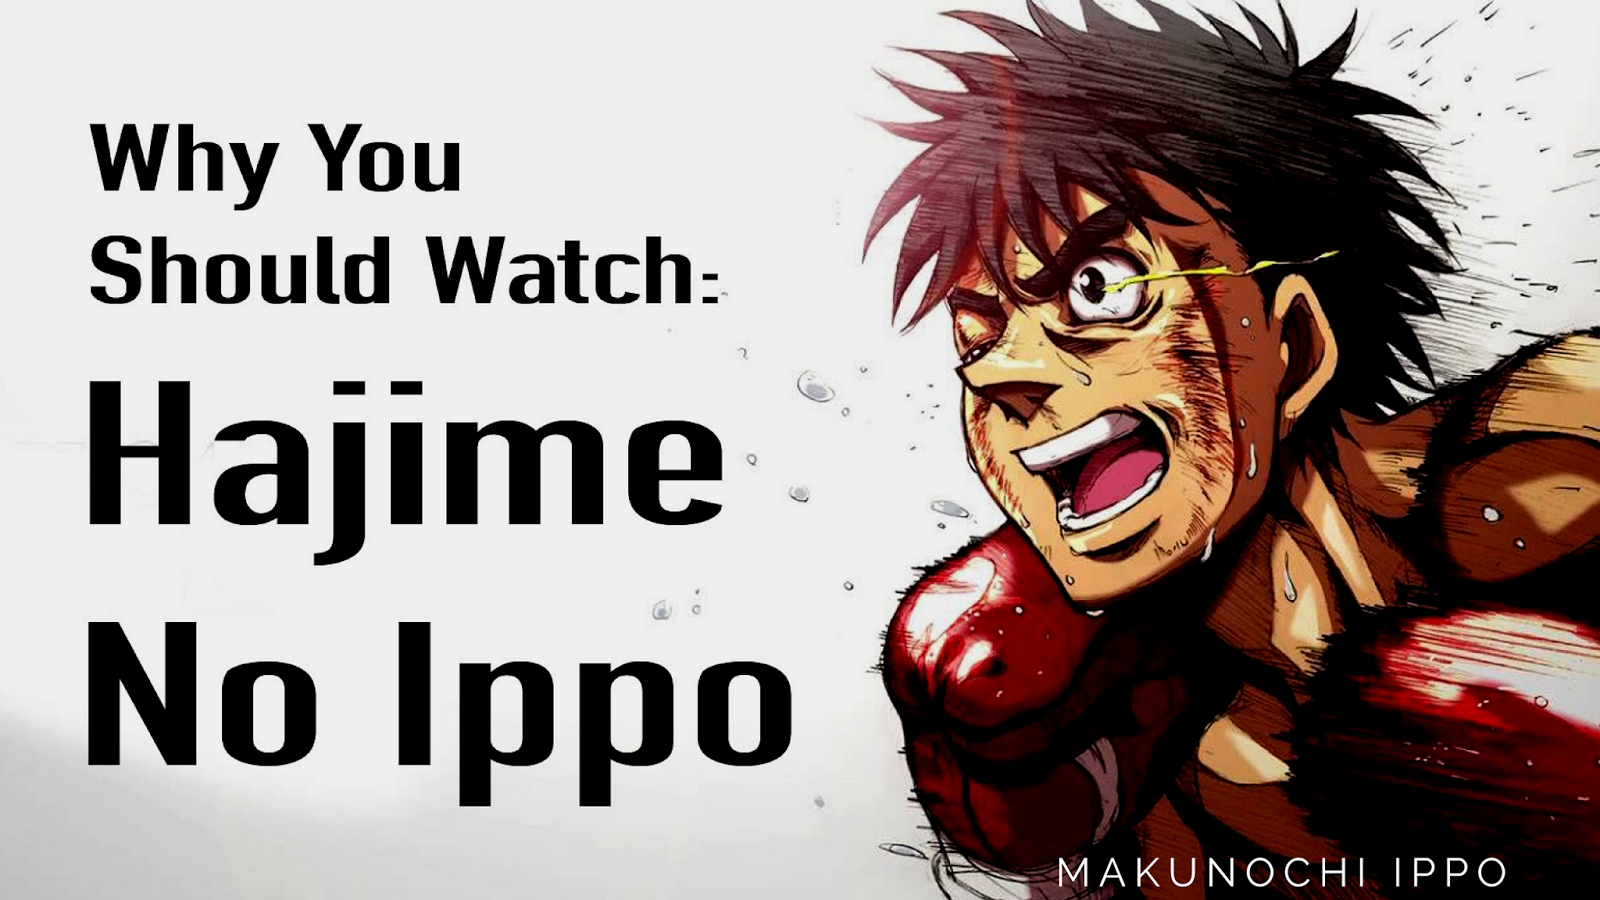 Assistir 'Hajime no Ippo: Mashiba vs. Kimura' online - ver filme